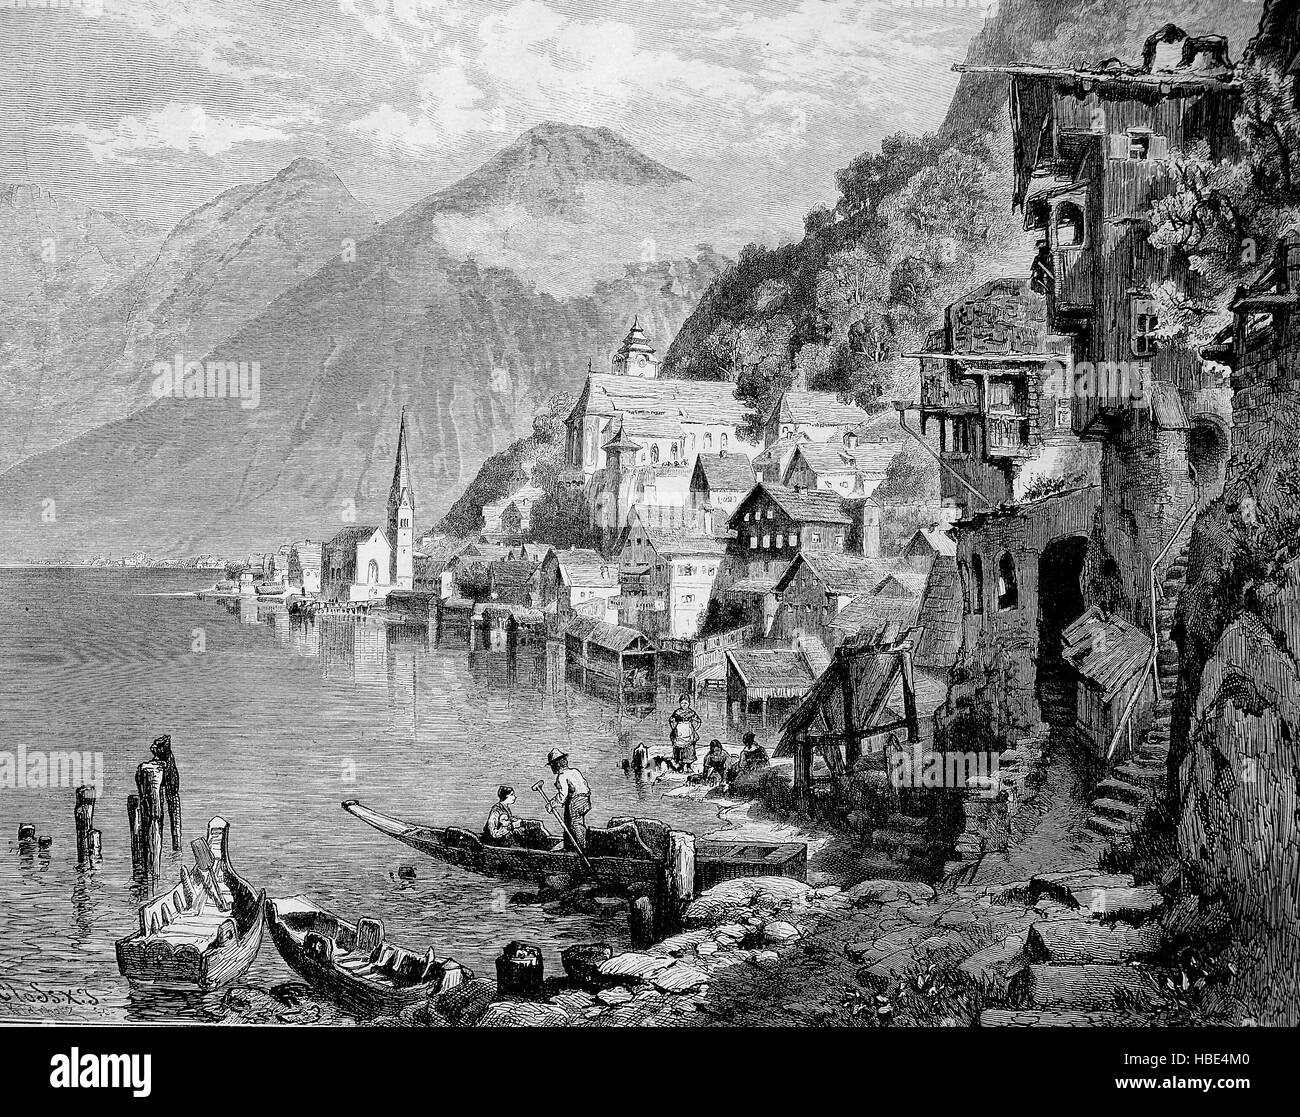 Vista di Hallstatt, Austria superiore, un villaggio nella regione del Salzkammergut, una regione in Austria, illustrazione, xilografia dal 1880 Foto Stock